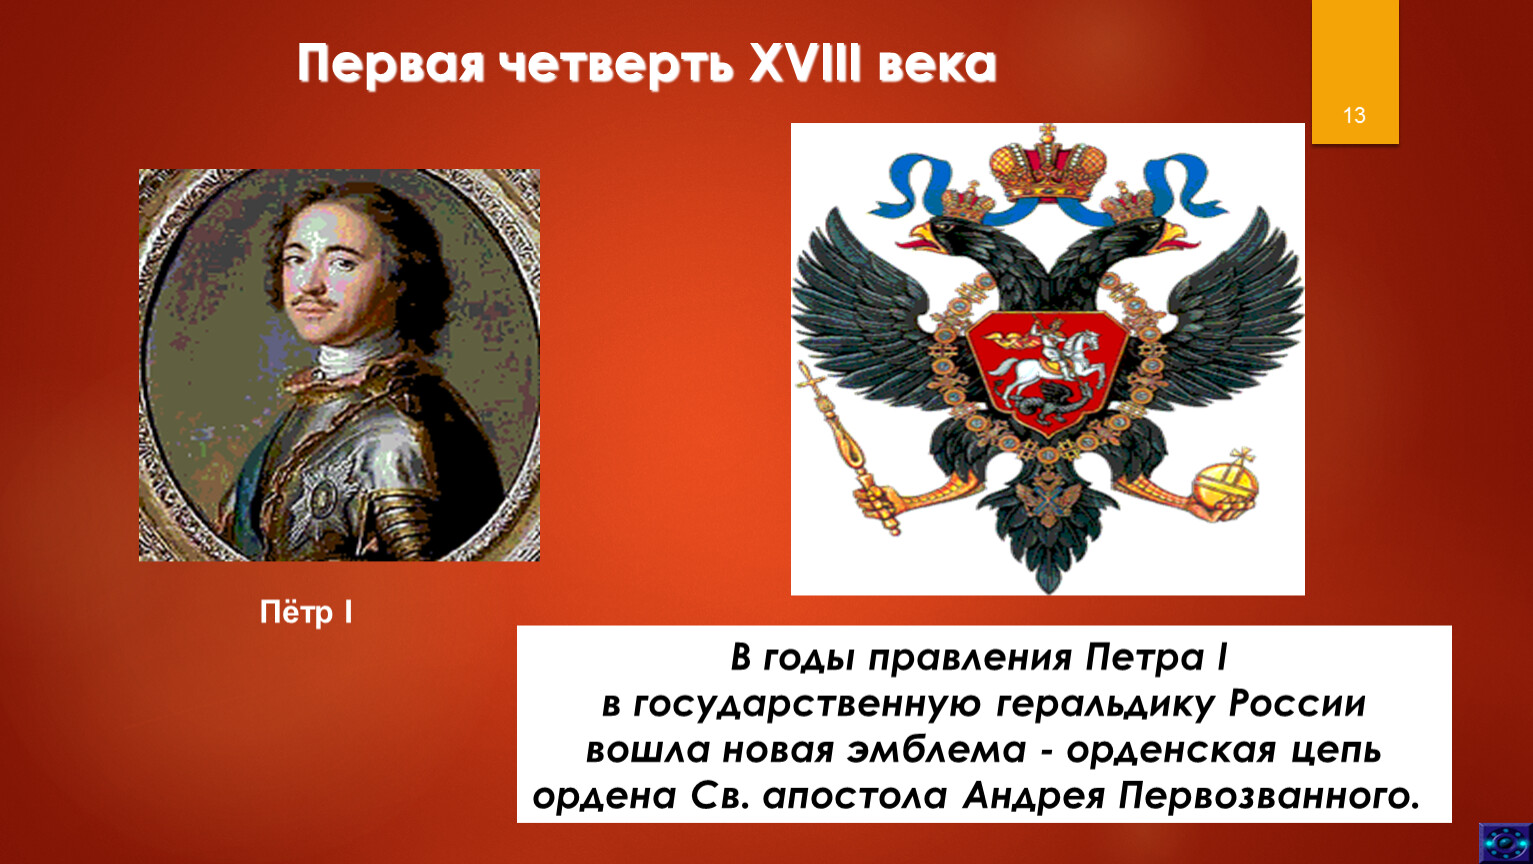 Обществознание 7 класс государственные символы россии презентация